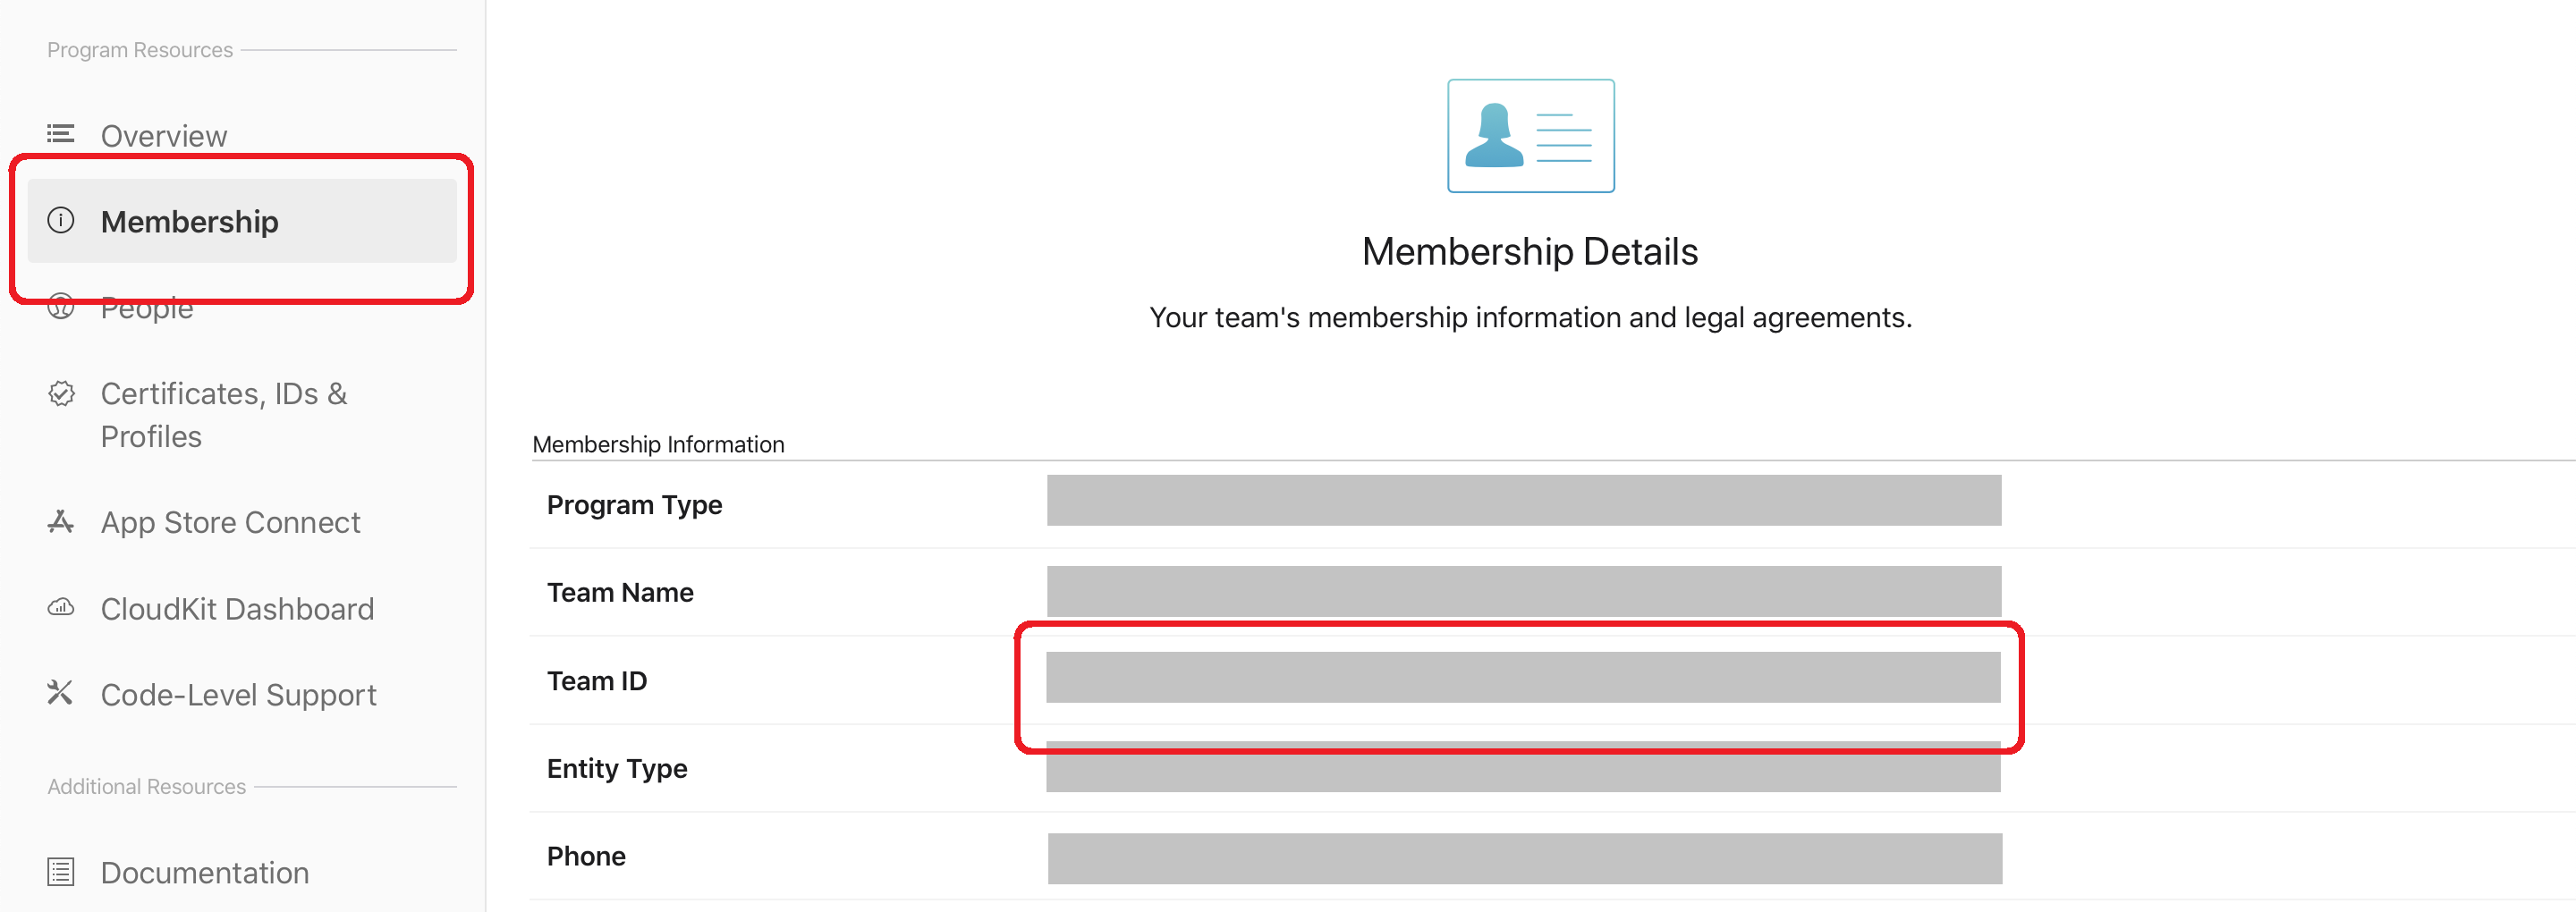 Apple Developer Program Membership Details